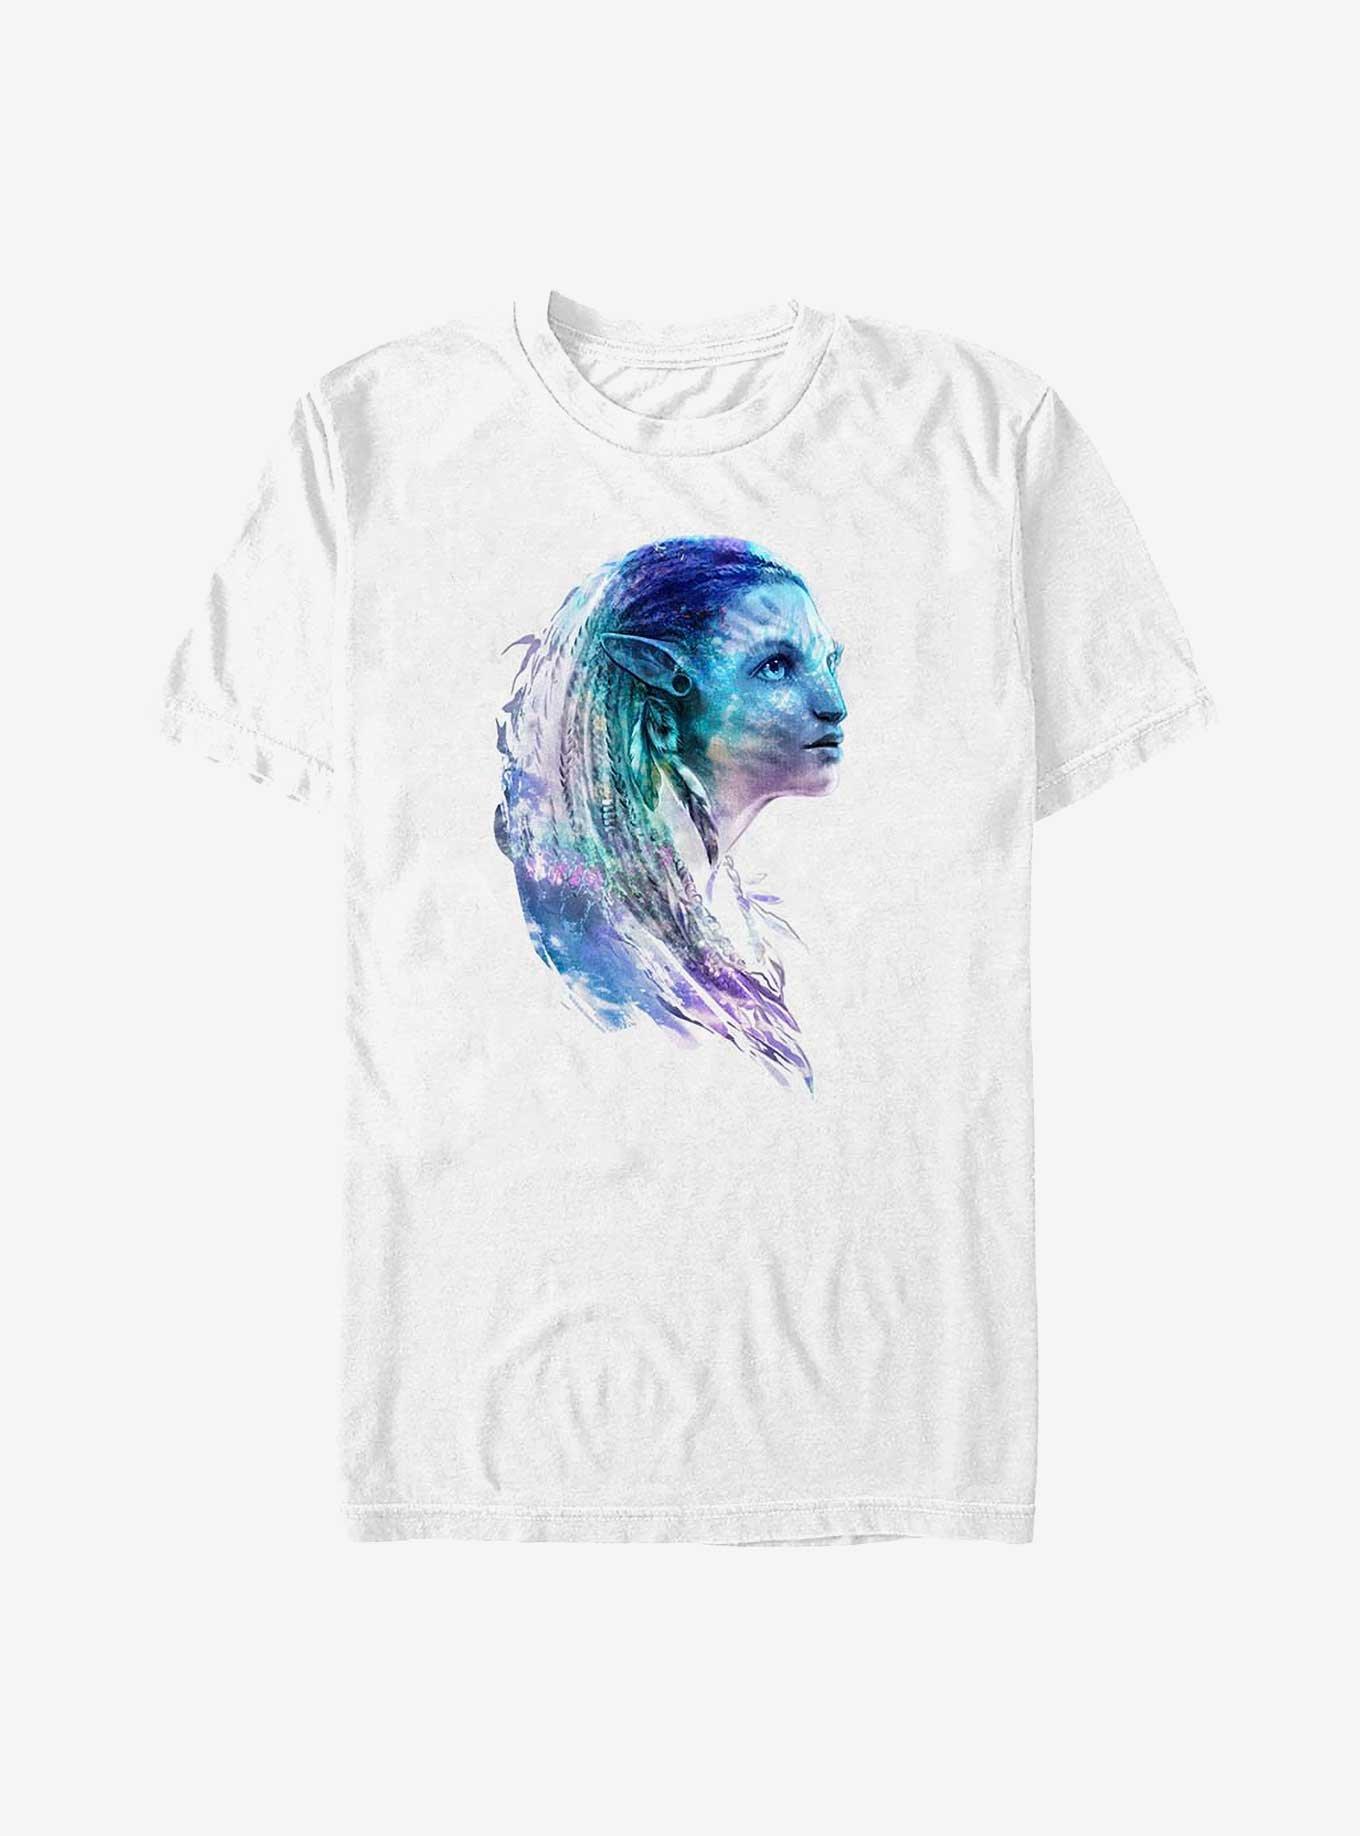 Avatar: The Way of Water Neytiri Portrait T-Shirt